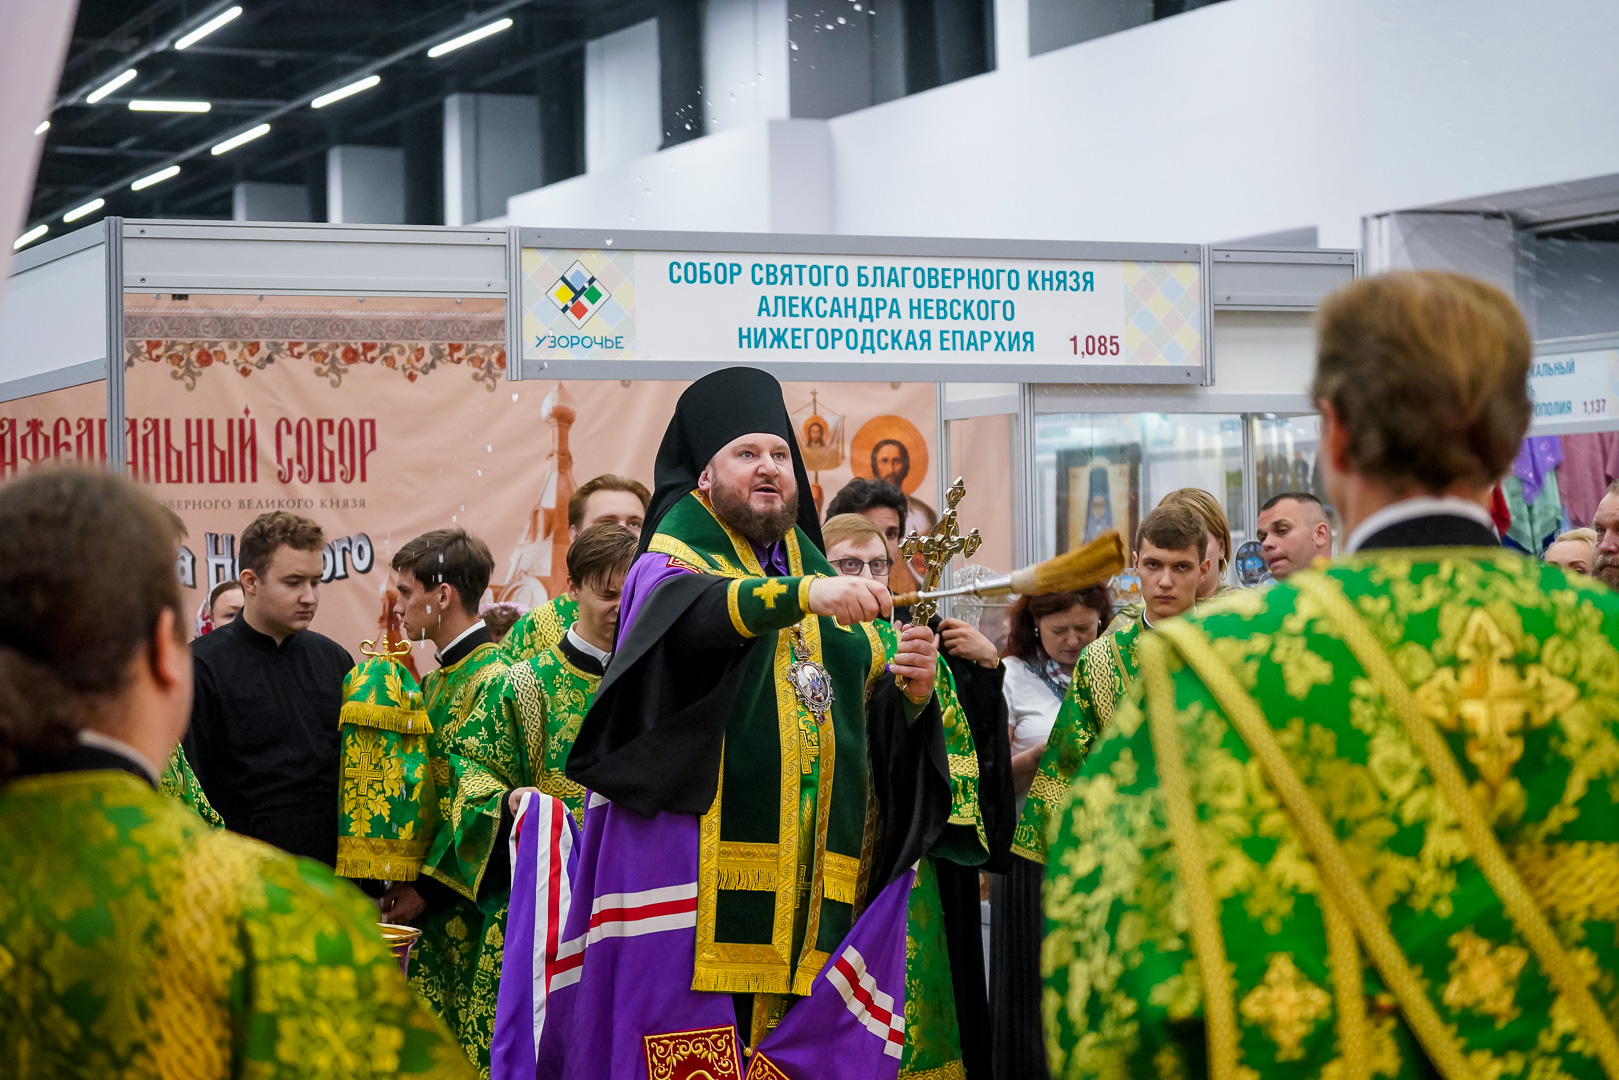 Где проходит ярмарка православная в нижнем новгороде. Православная ярмарка в Нижнем Новгороде. Нижегородская православная ярмарка в 2023 году. Православная ярмарка в Нижнем Новгороде в 2023.